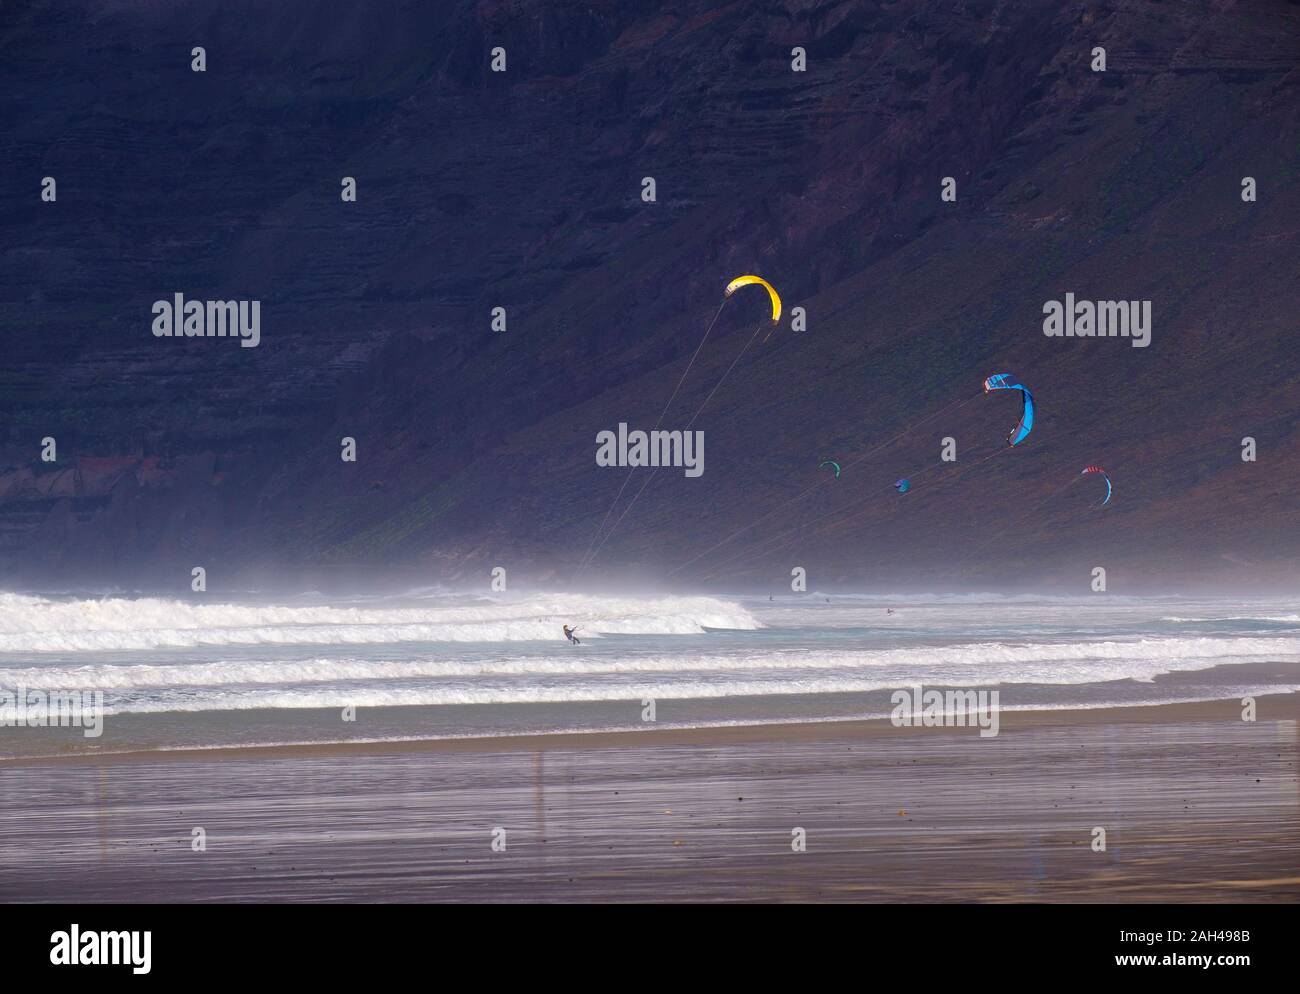 Spanien, Kanarische Inseln, Caleta de Famara, Kitesurfer am Playa de Famara mit hohen Felsen im Hintergrund Stockfoto